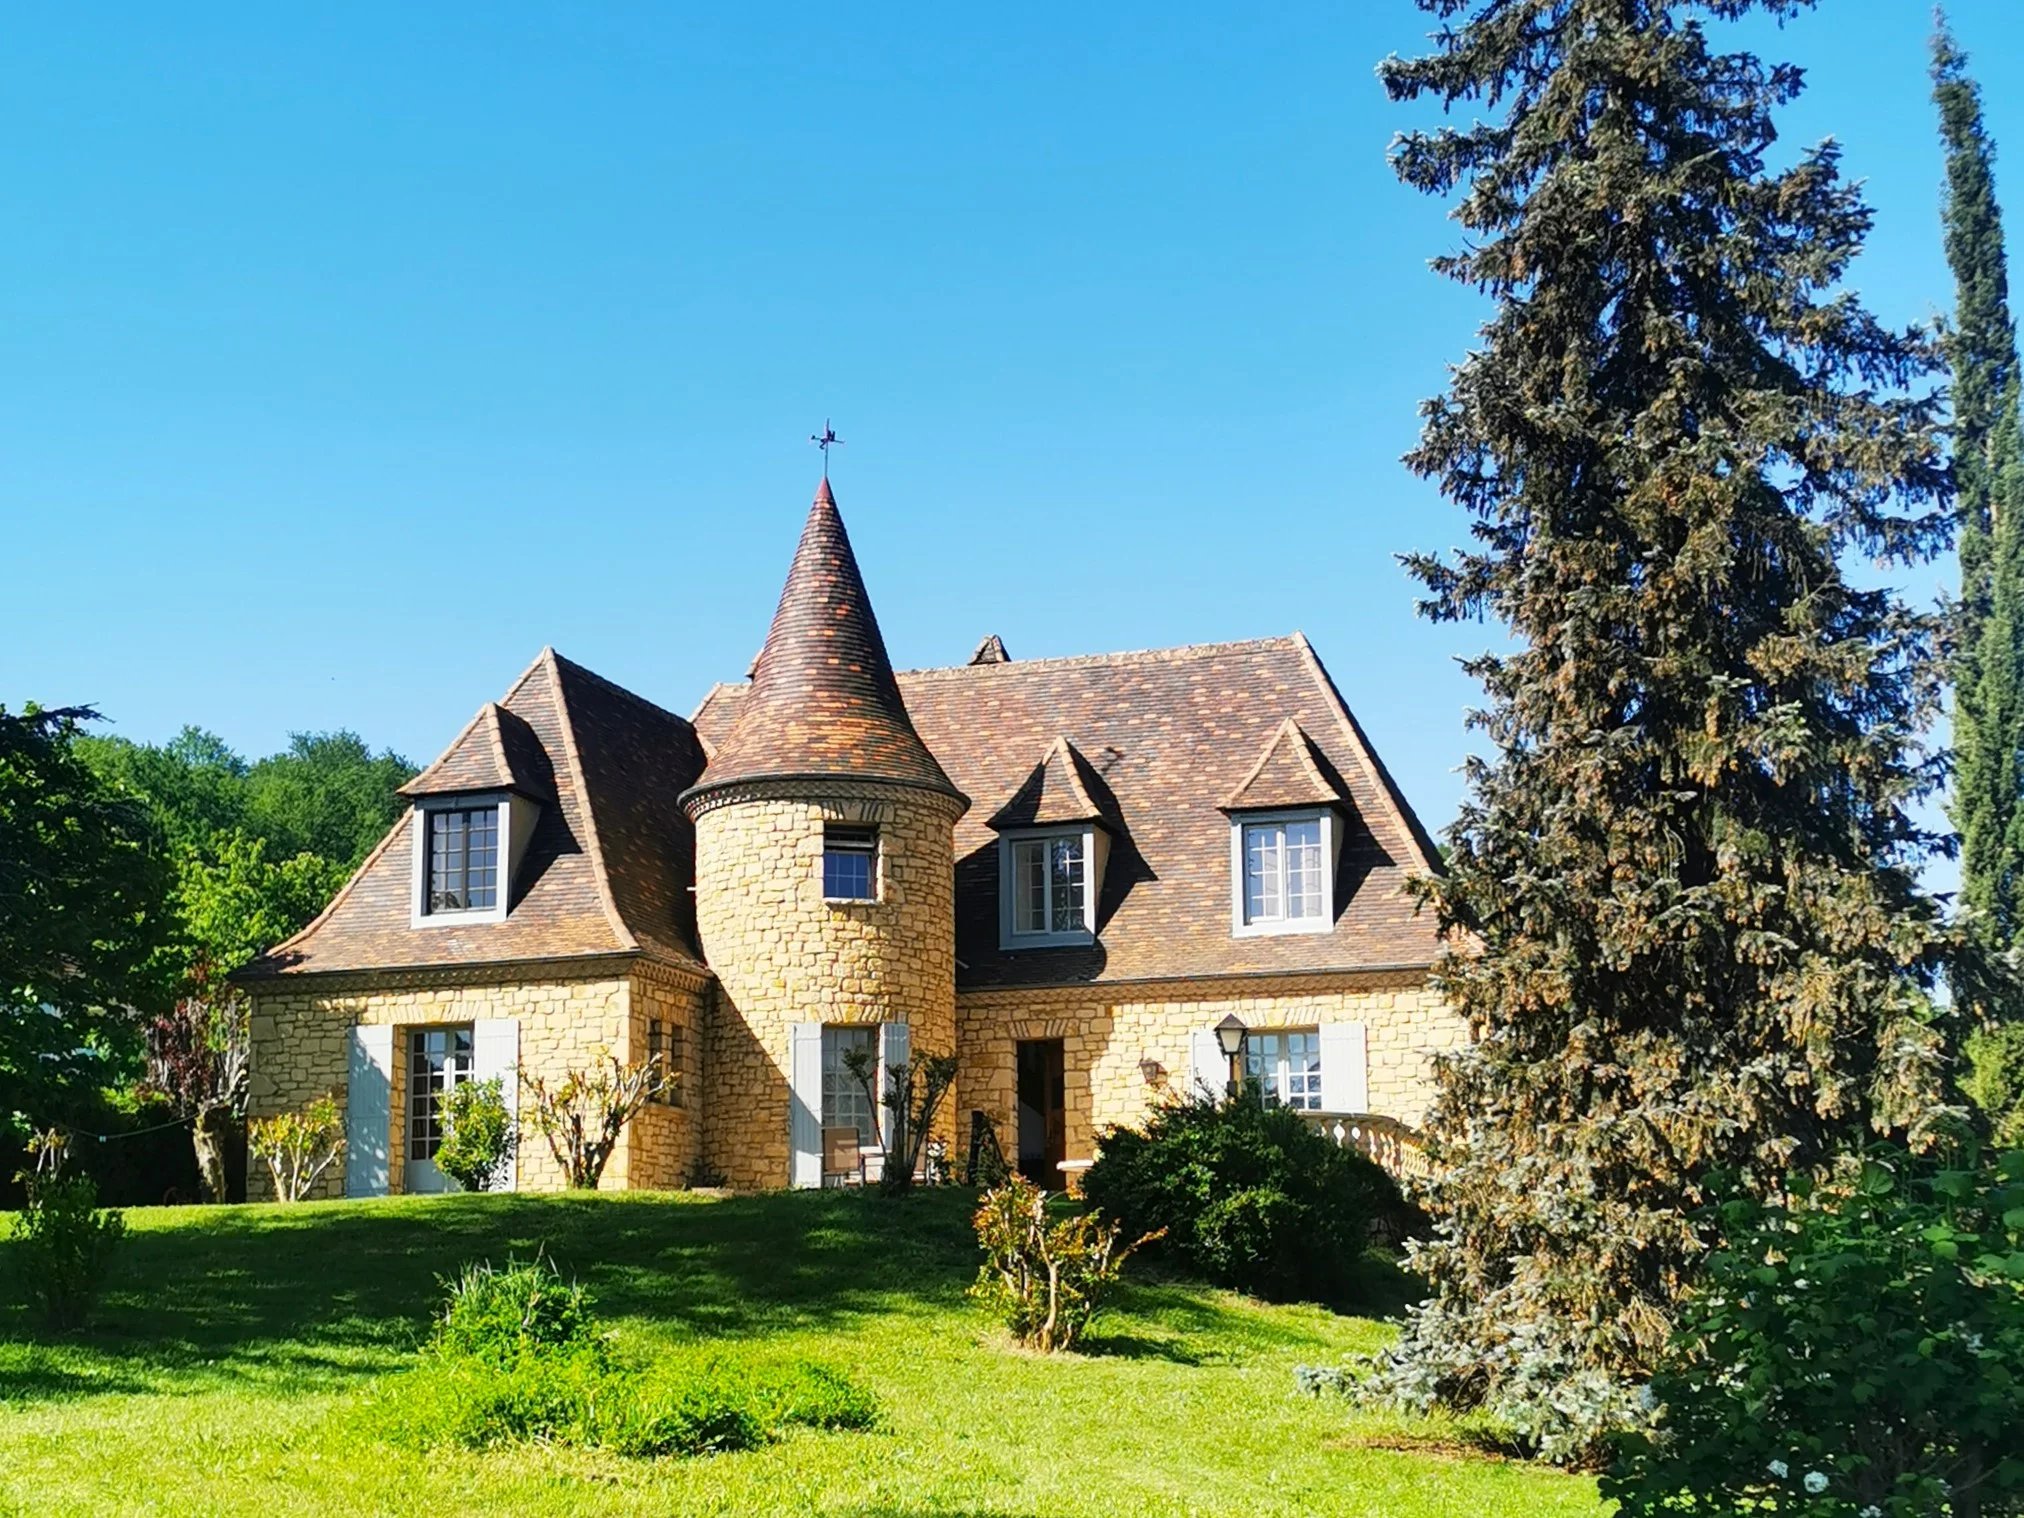 Périgord style house near the Dordogne river